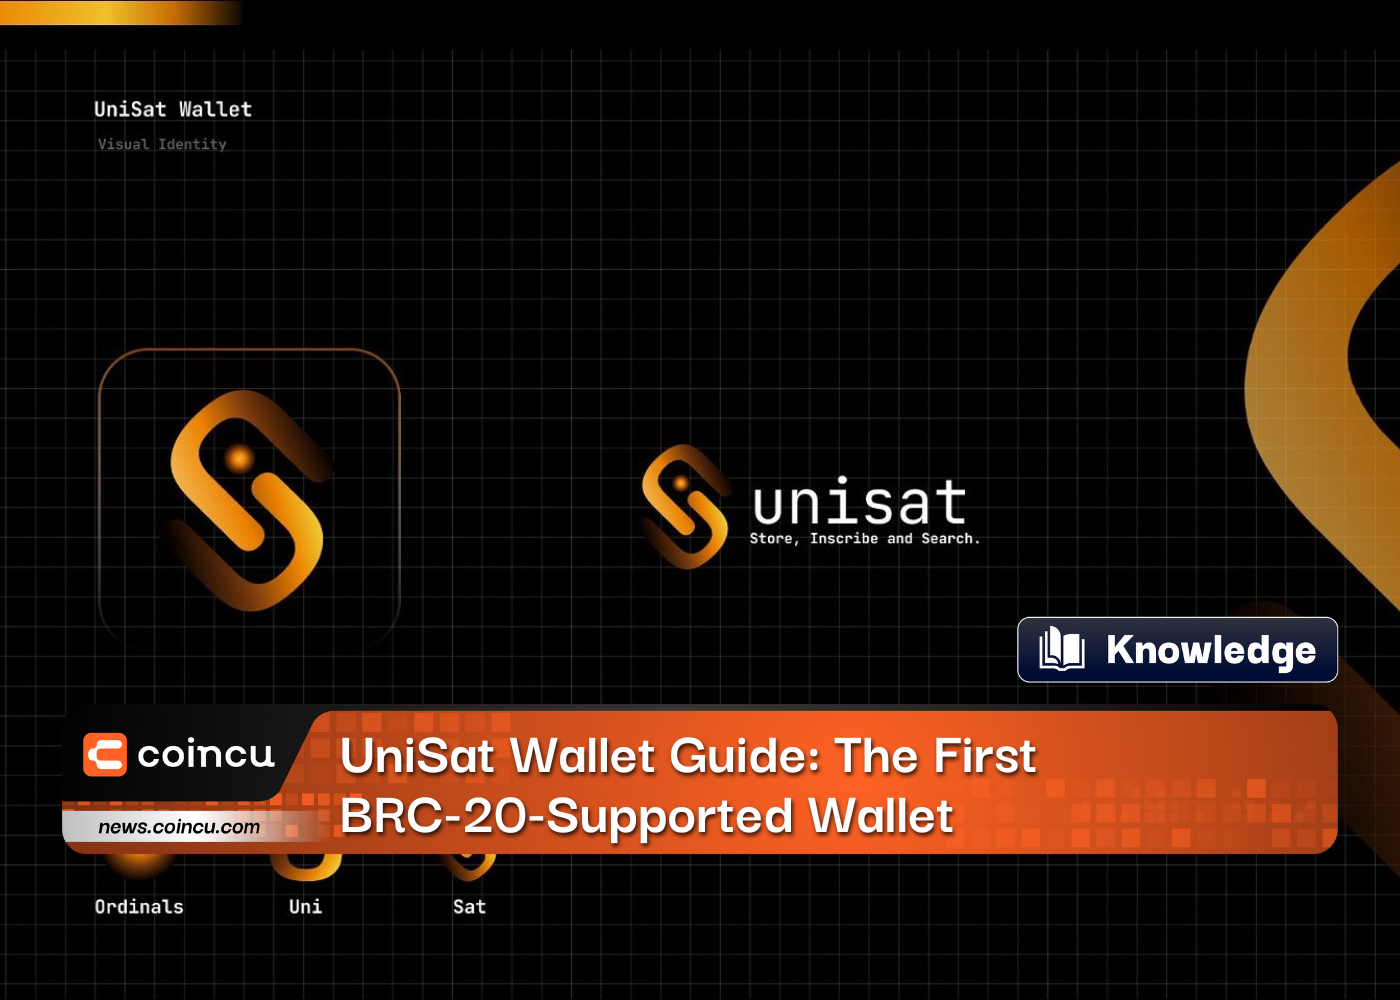 راهنمای کیف پول UniSat: اولین کیف پول پشتیبانی شده از BRC-20